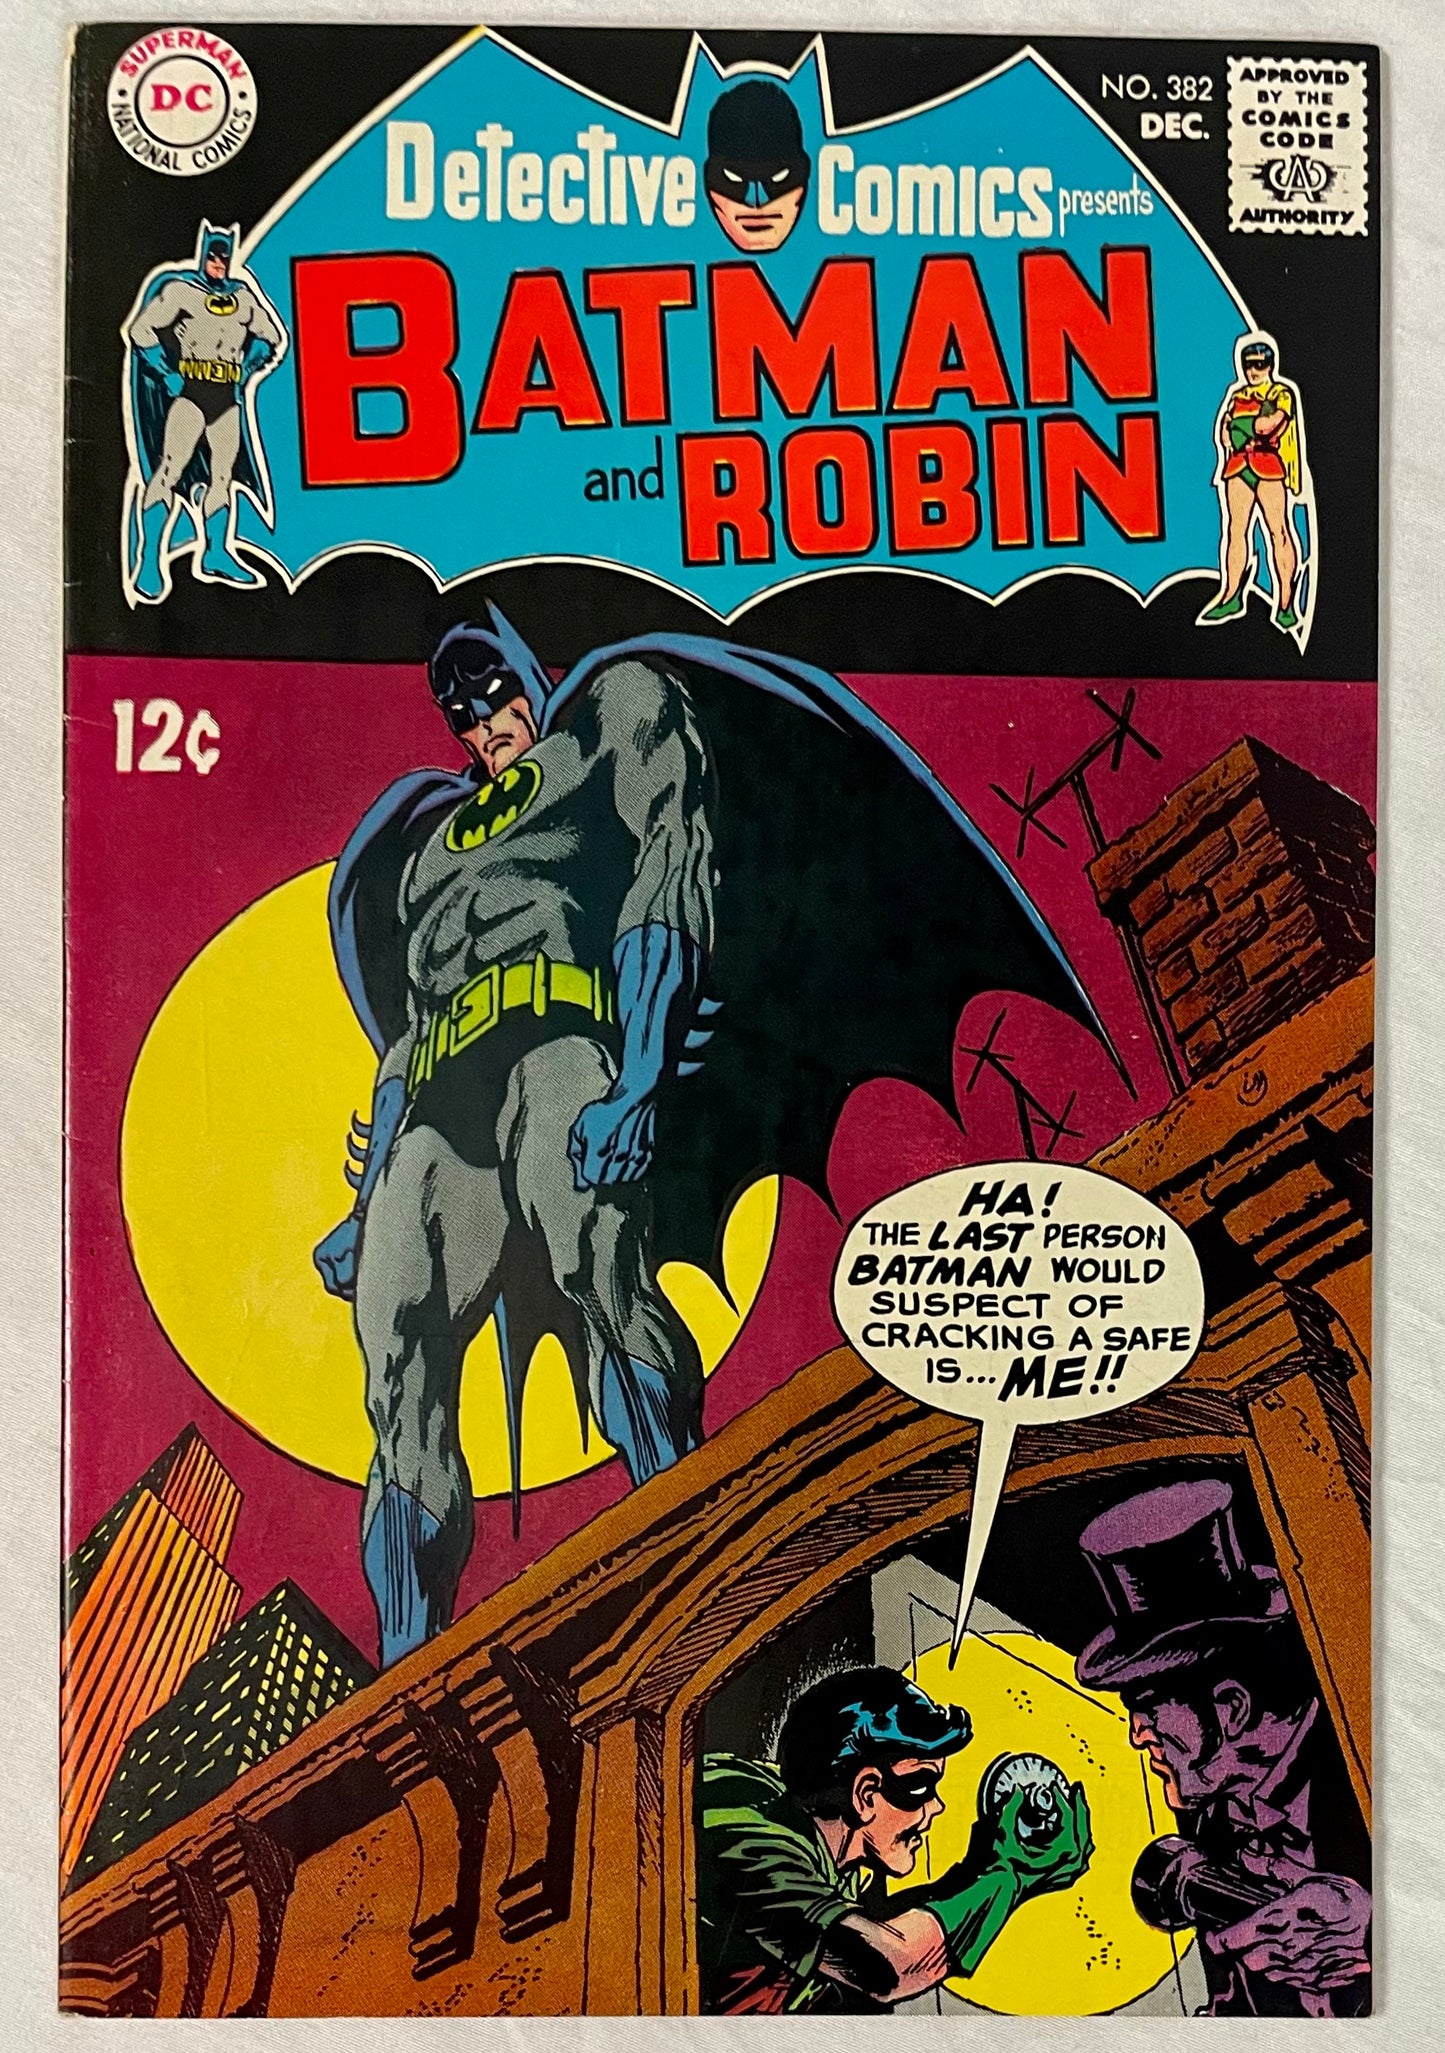 DC Comics Detective Comics No. 382